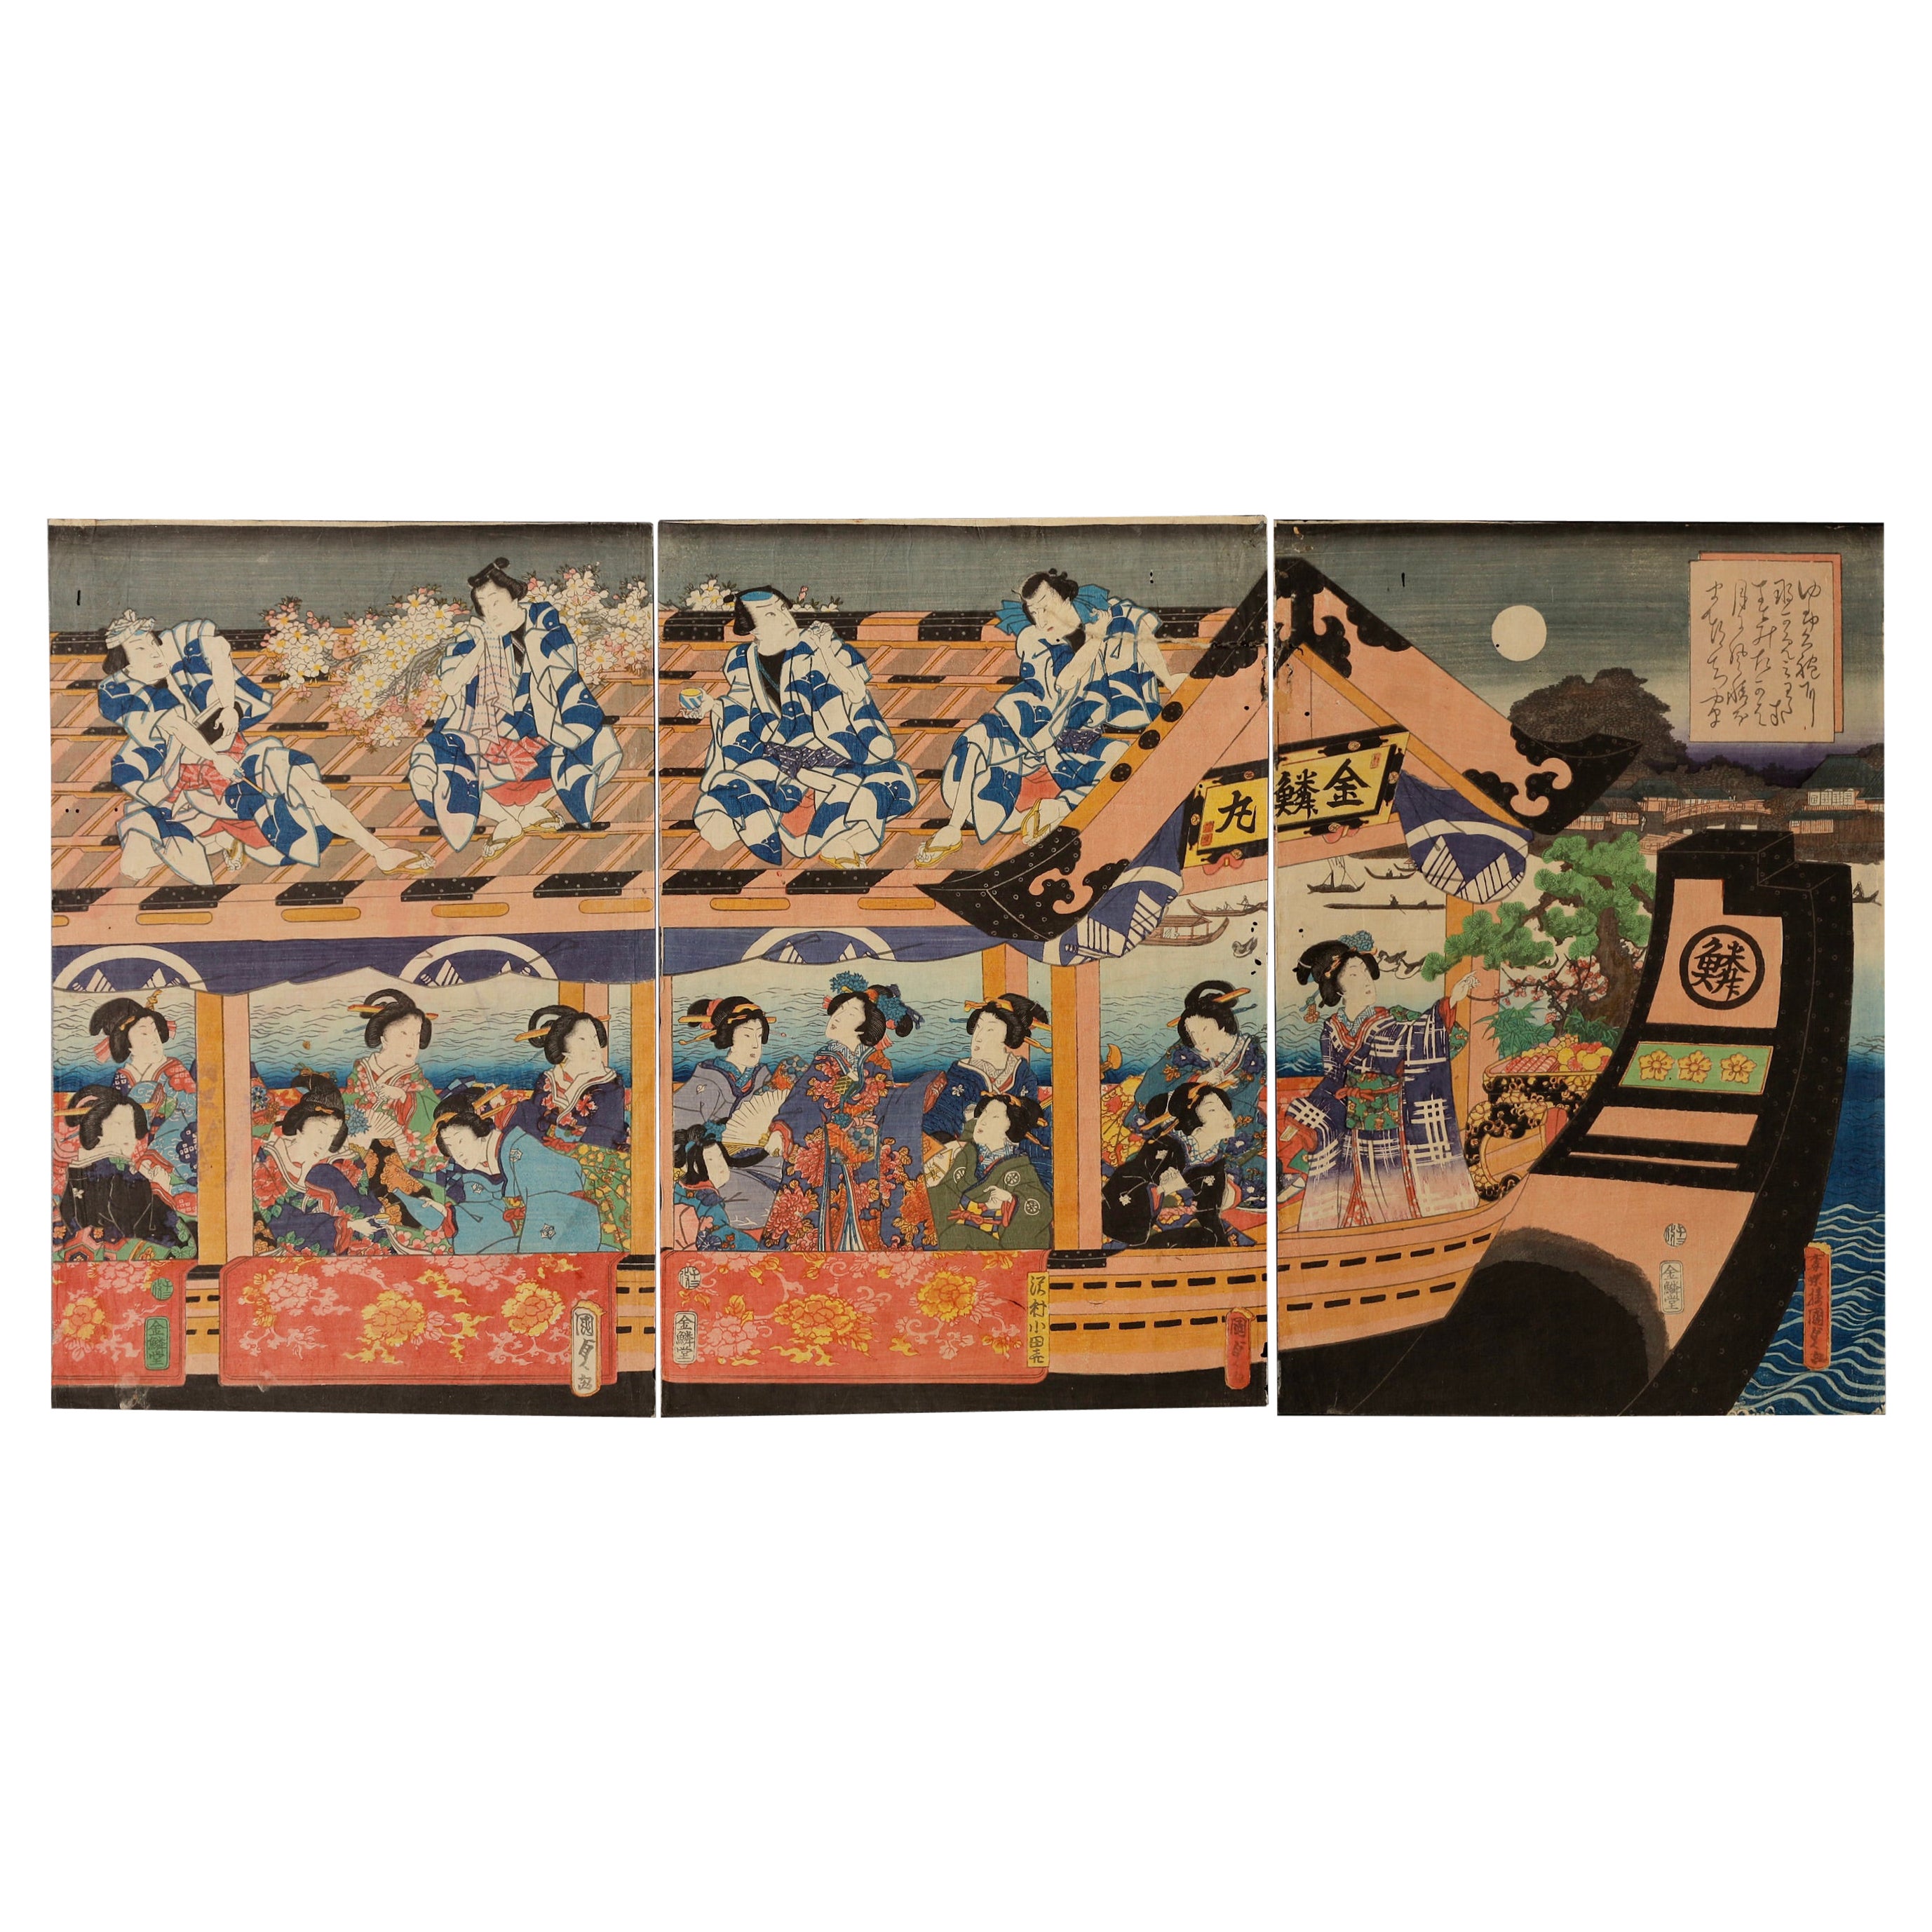 Ukiyoe print by Utagawa Kunisada